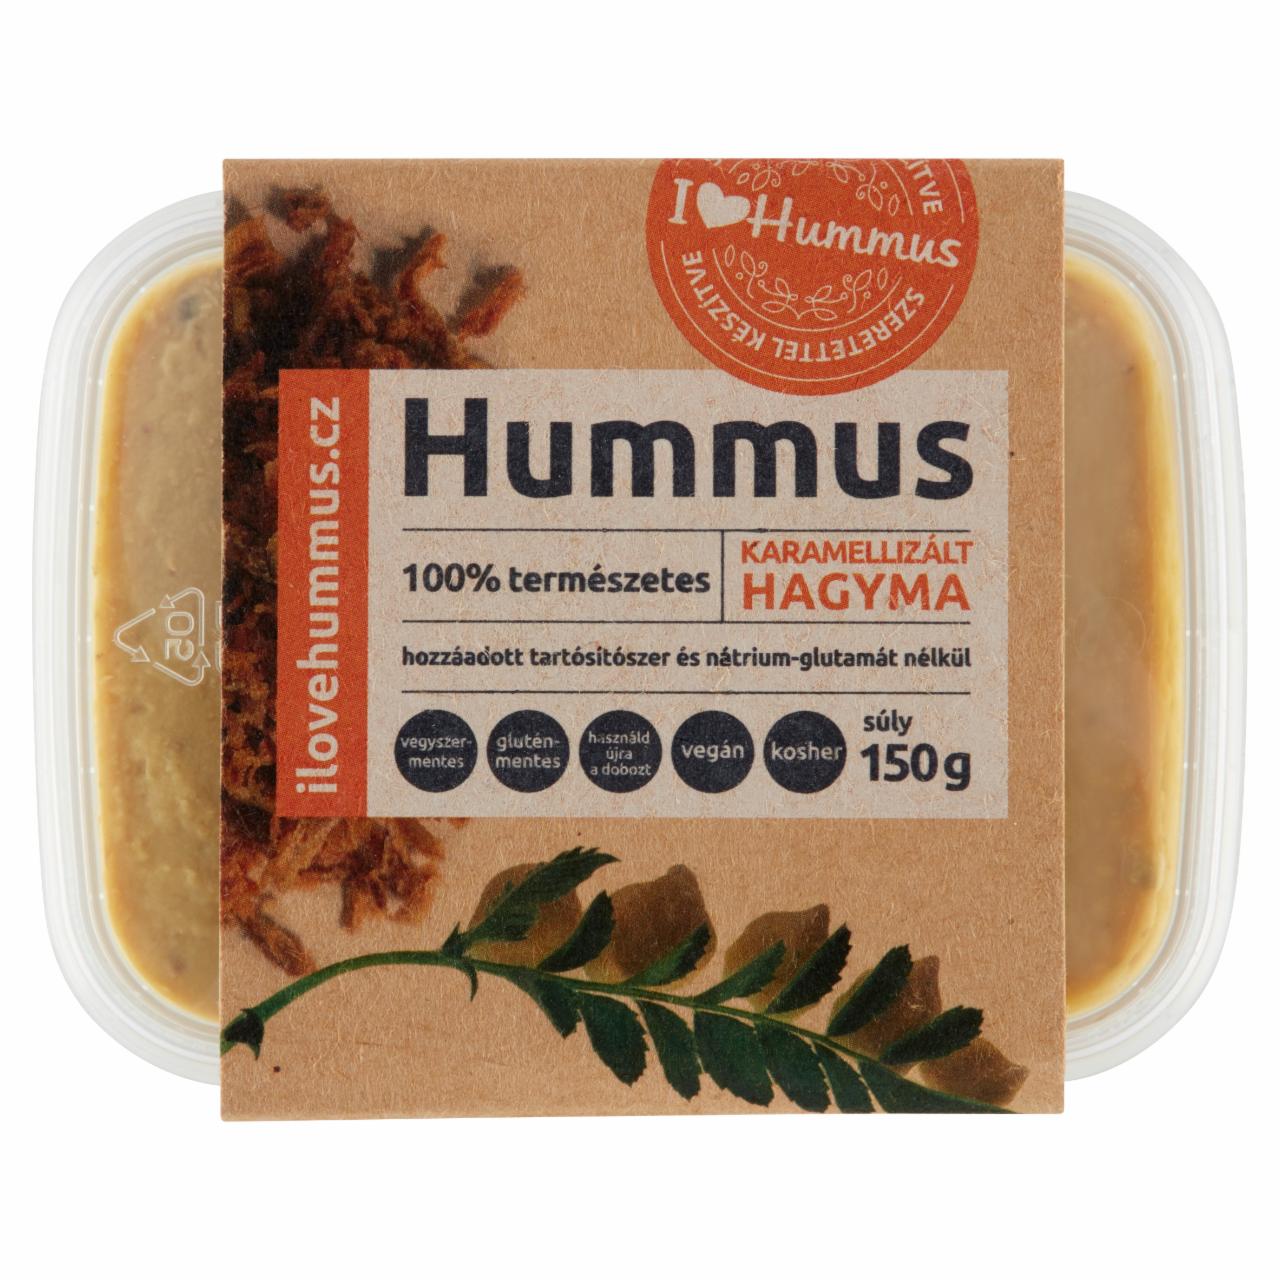 Képek - I love Hummus - hummusz karamellizált hagyma 150 g